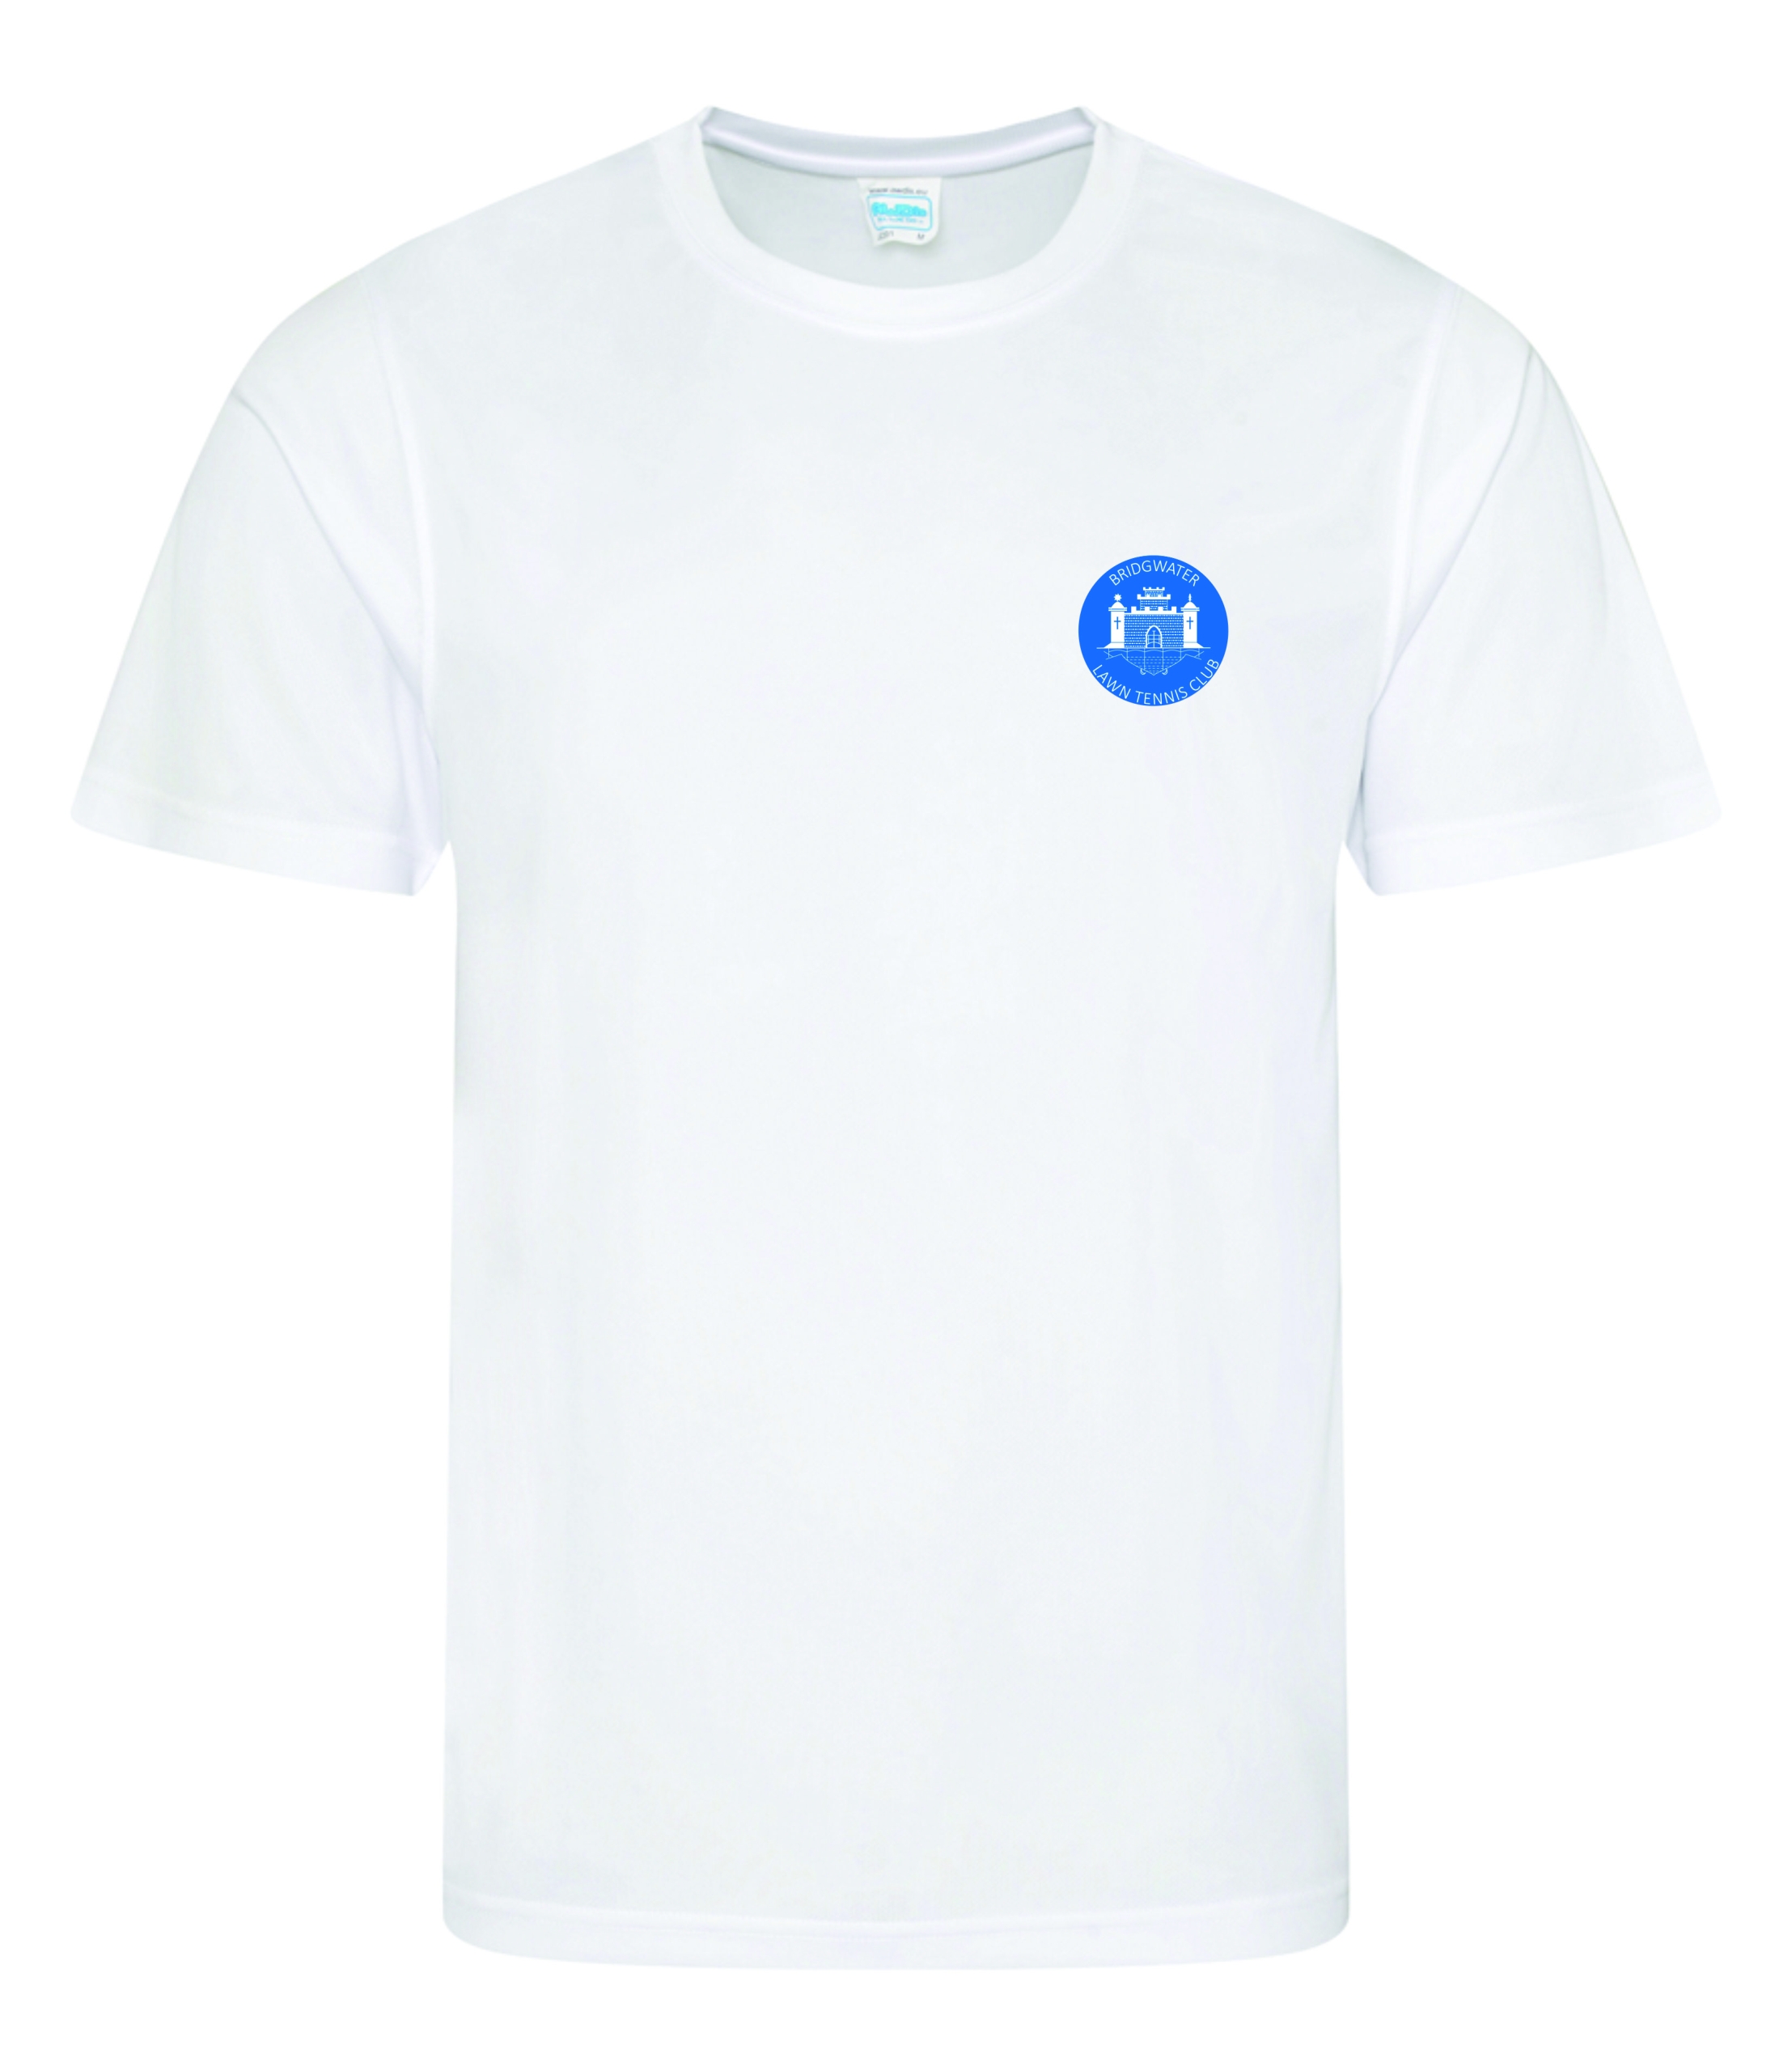 BW Lawn Tennis - Unisex Tshirt - JC001 | Jual Branded Clothing ...